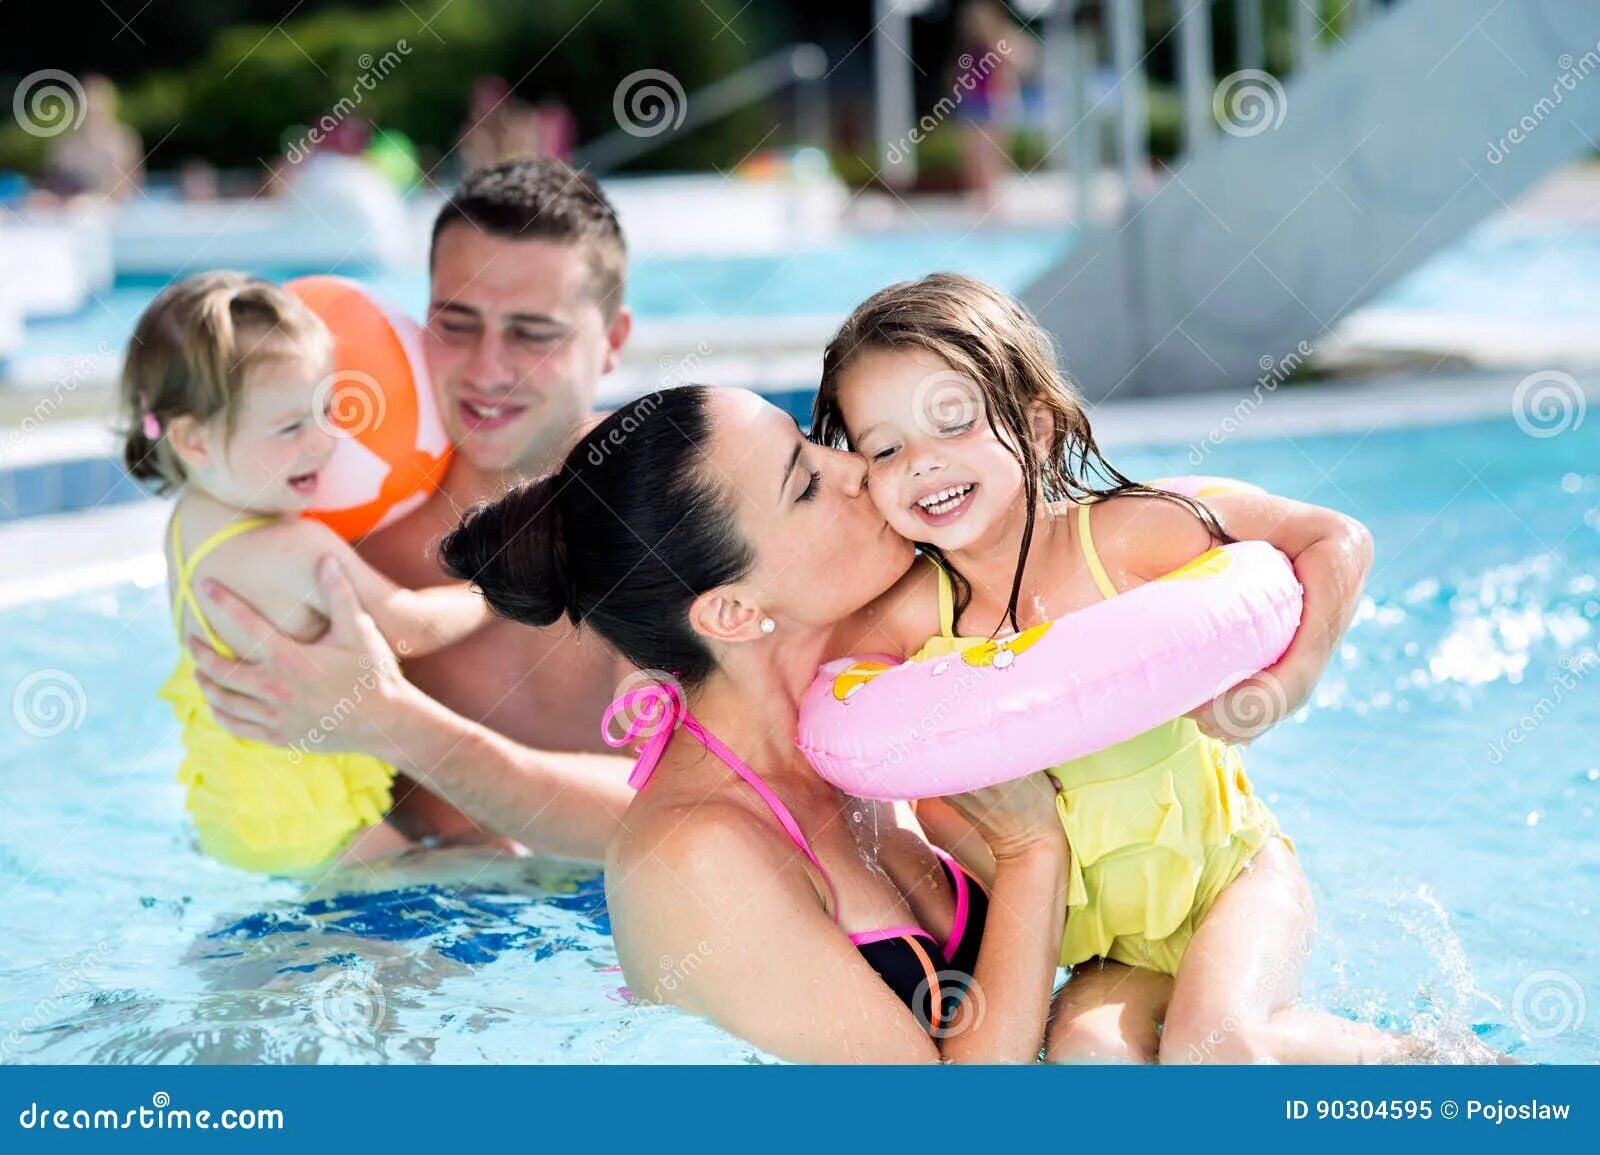 Семья в бассейне. Папа с дочкой в бассейне. Мама с дочкой в бассейне. Натуристские семьи в бассейне. Папа дочка парной